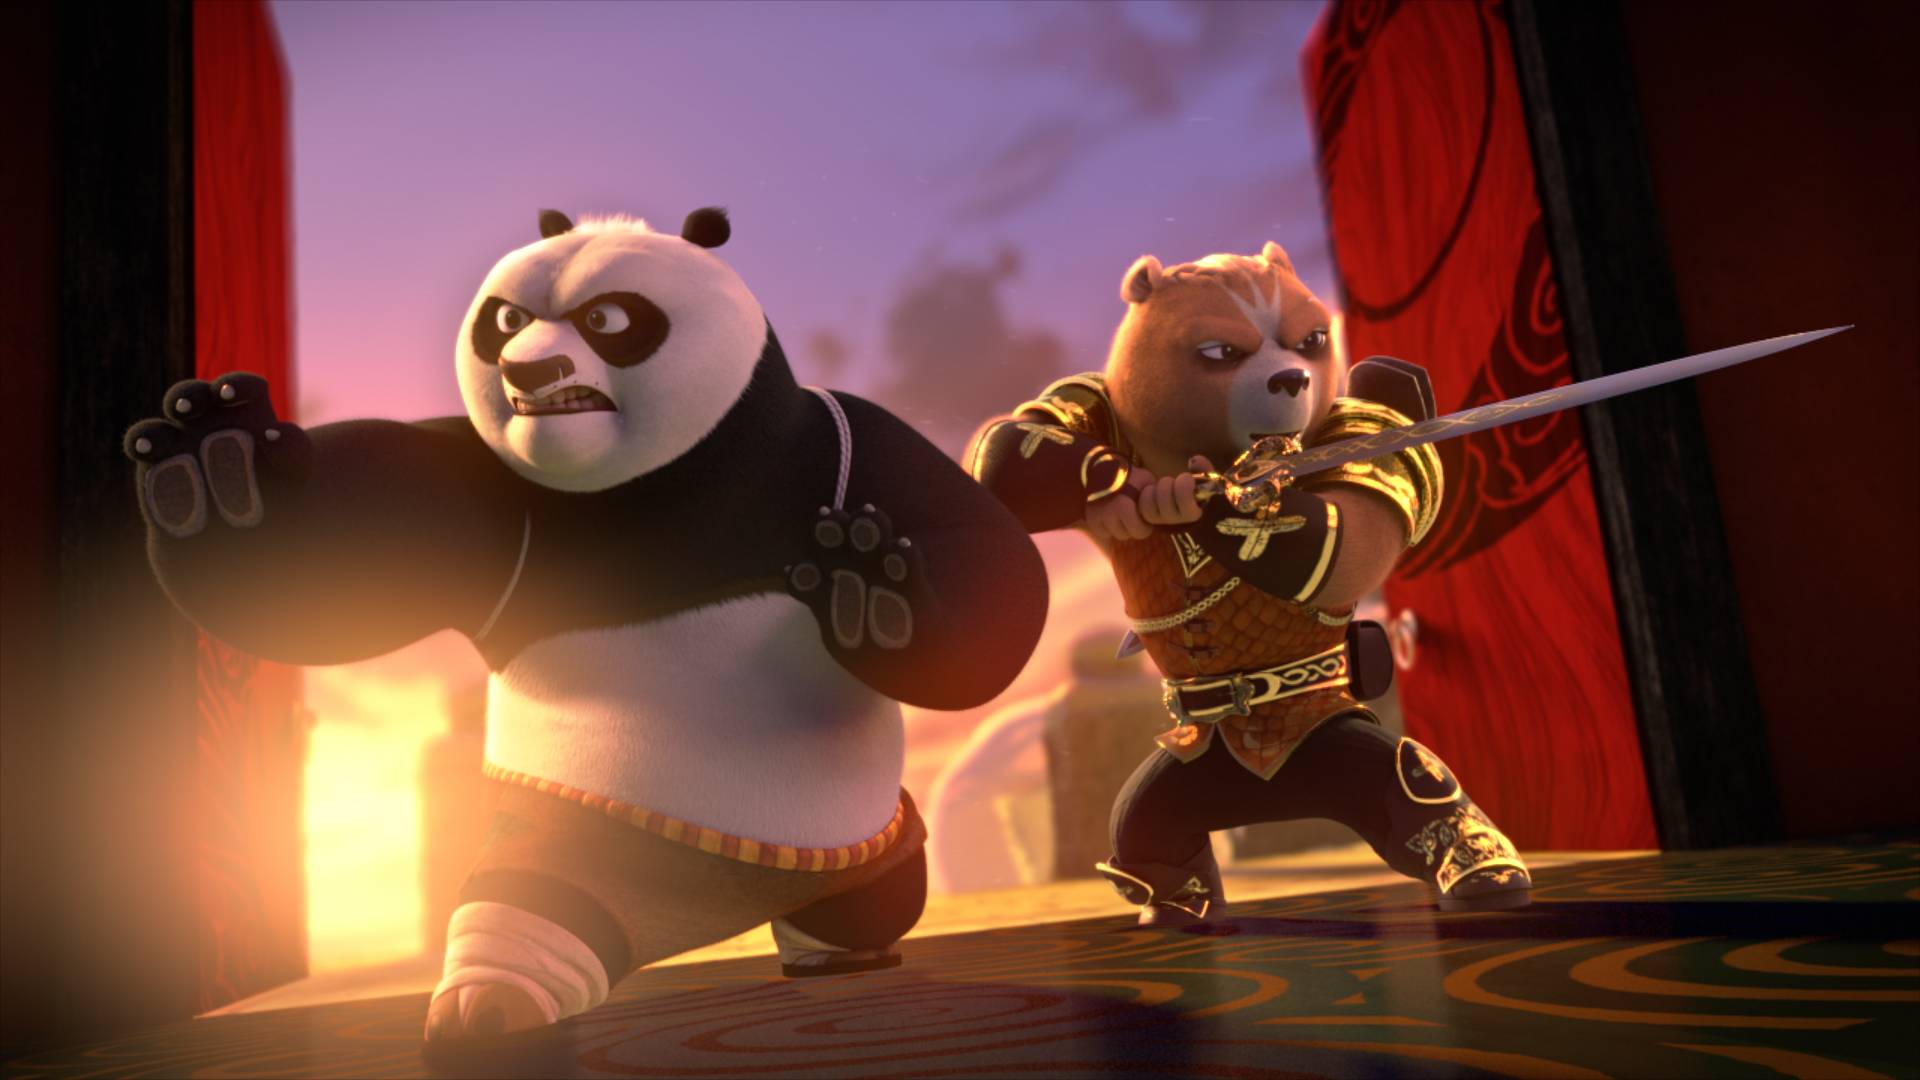 Kung Fu Panda series on Netflix